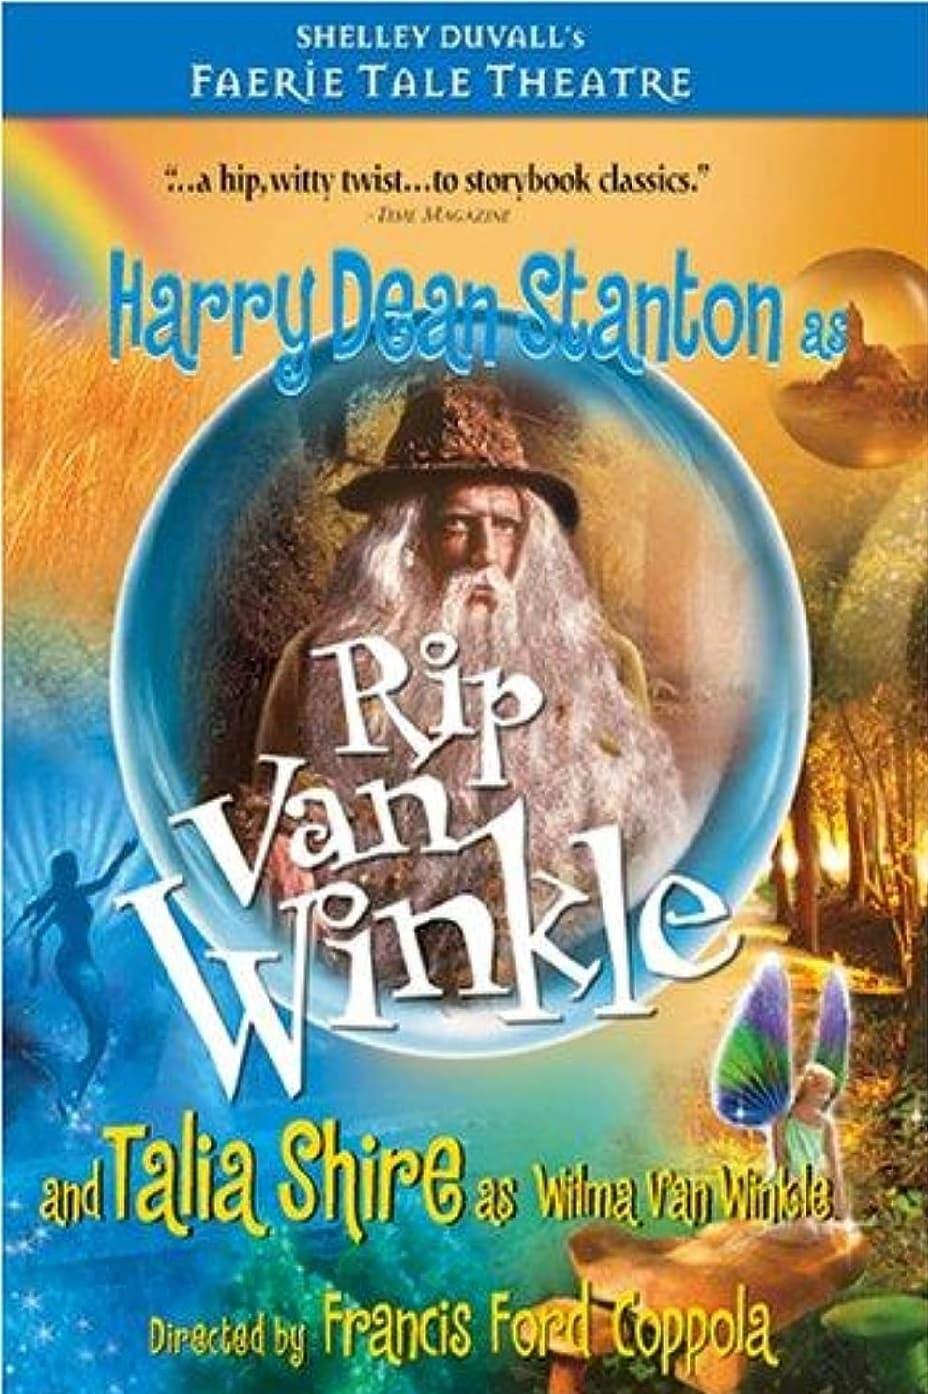 Rip Van Winkle poster